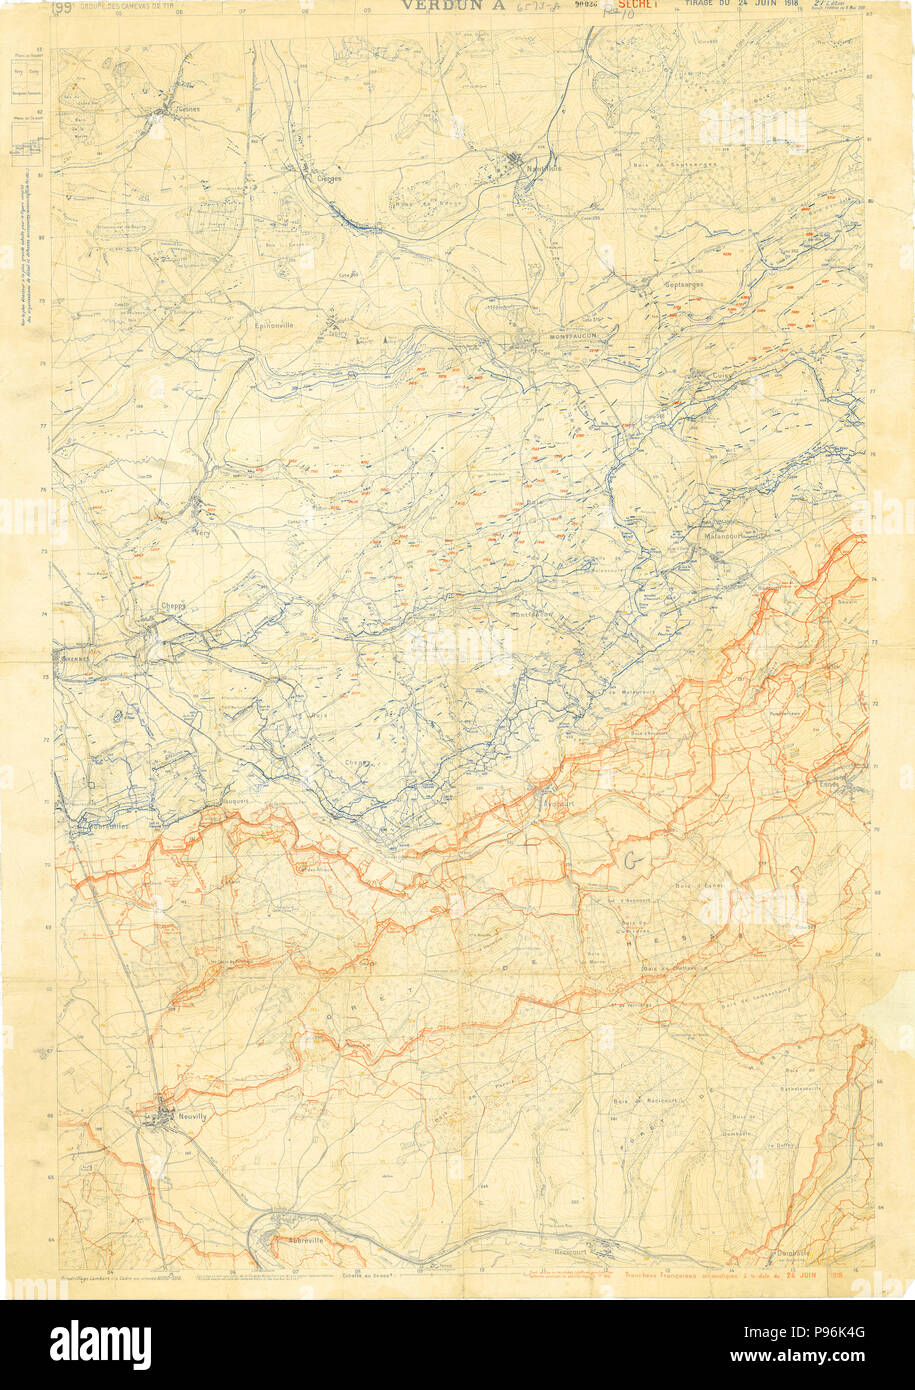 Verdun Trench Map